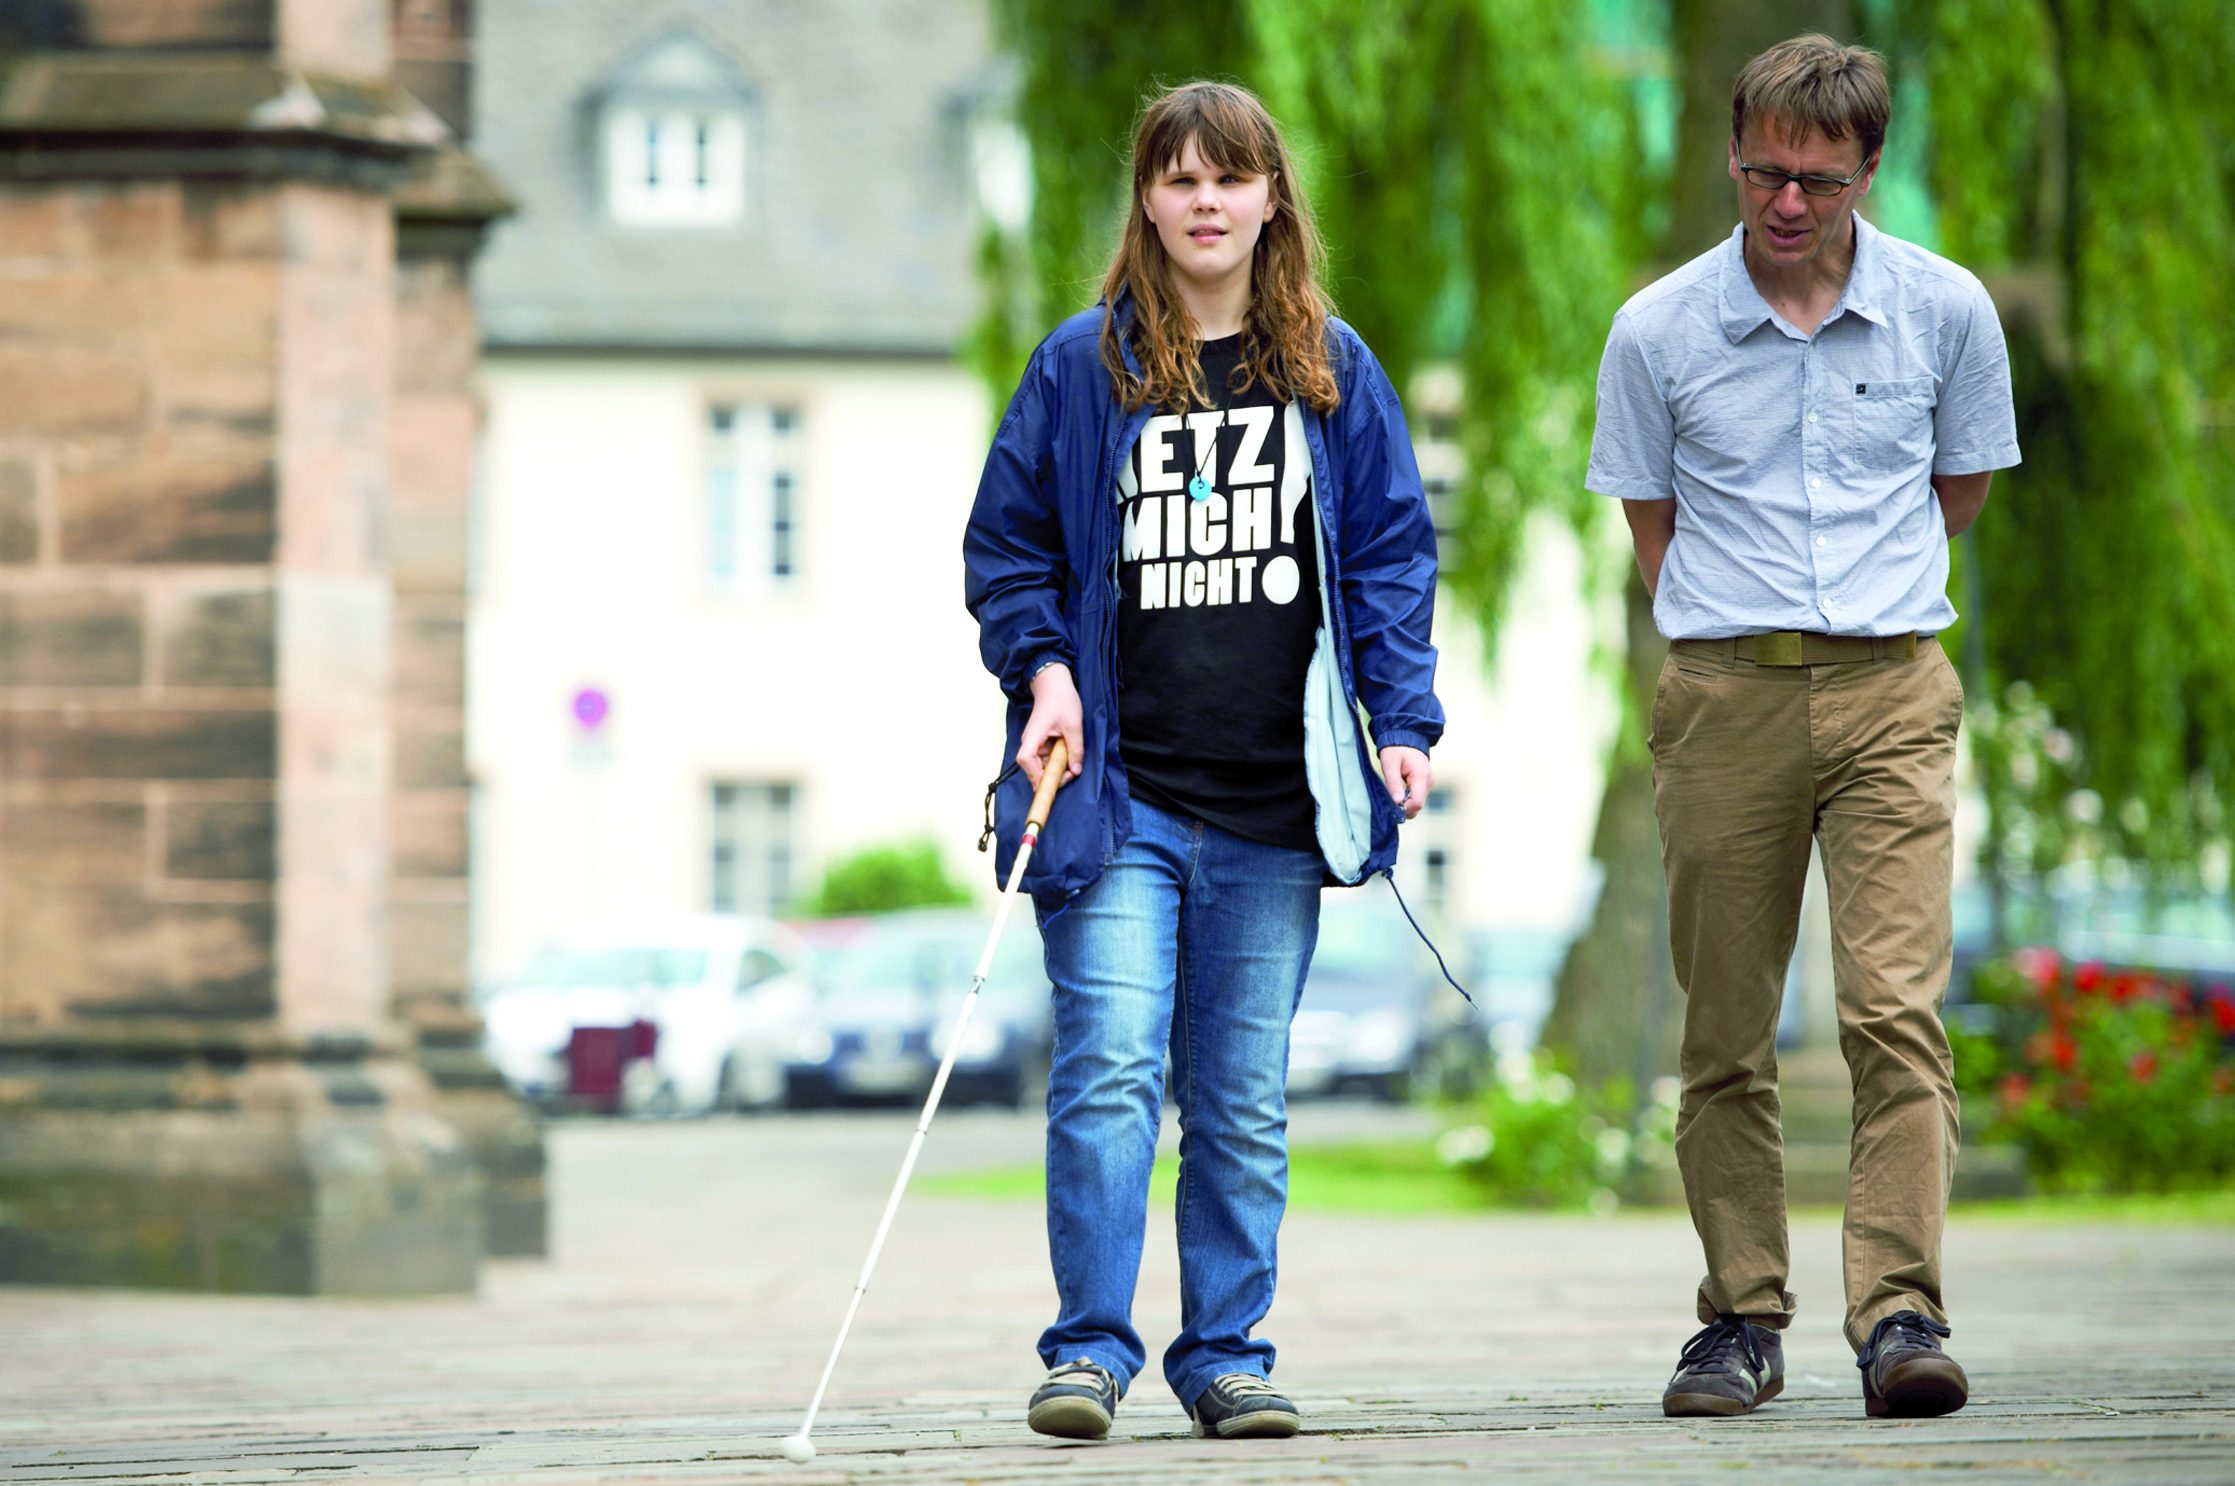 Szene aus dem Mobilitätsunterricht: Eine männliche Fachkraft für Blinden- und Sehbehindertenrehabilitation begleitet eine junge Frau mit Blindenlangstock. Sie trägt ein T-Shirt mit der Aufschrift "Hetz mich nicht!"